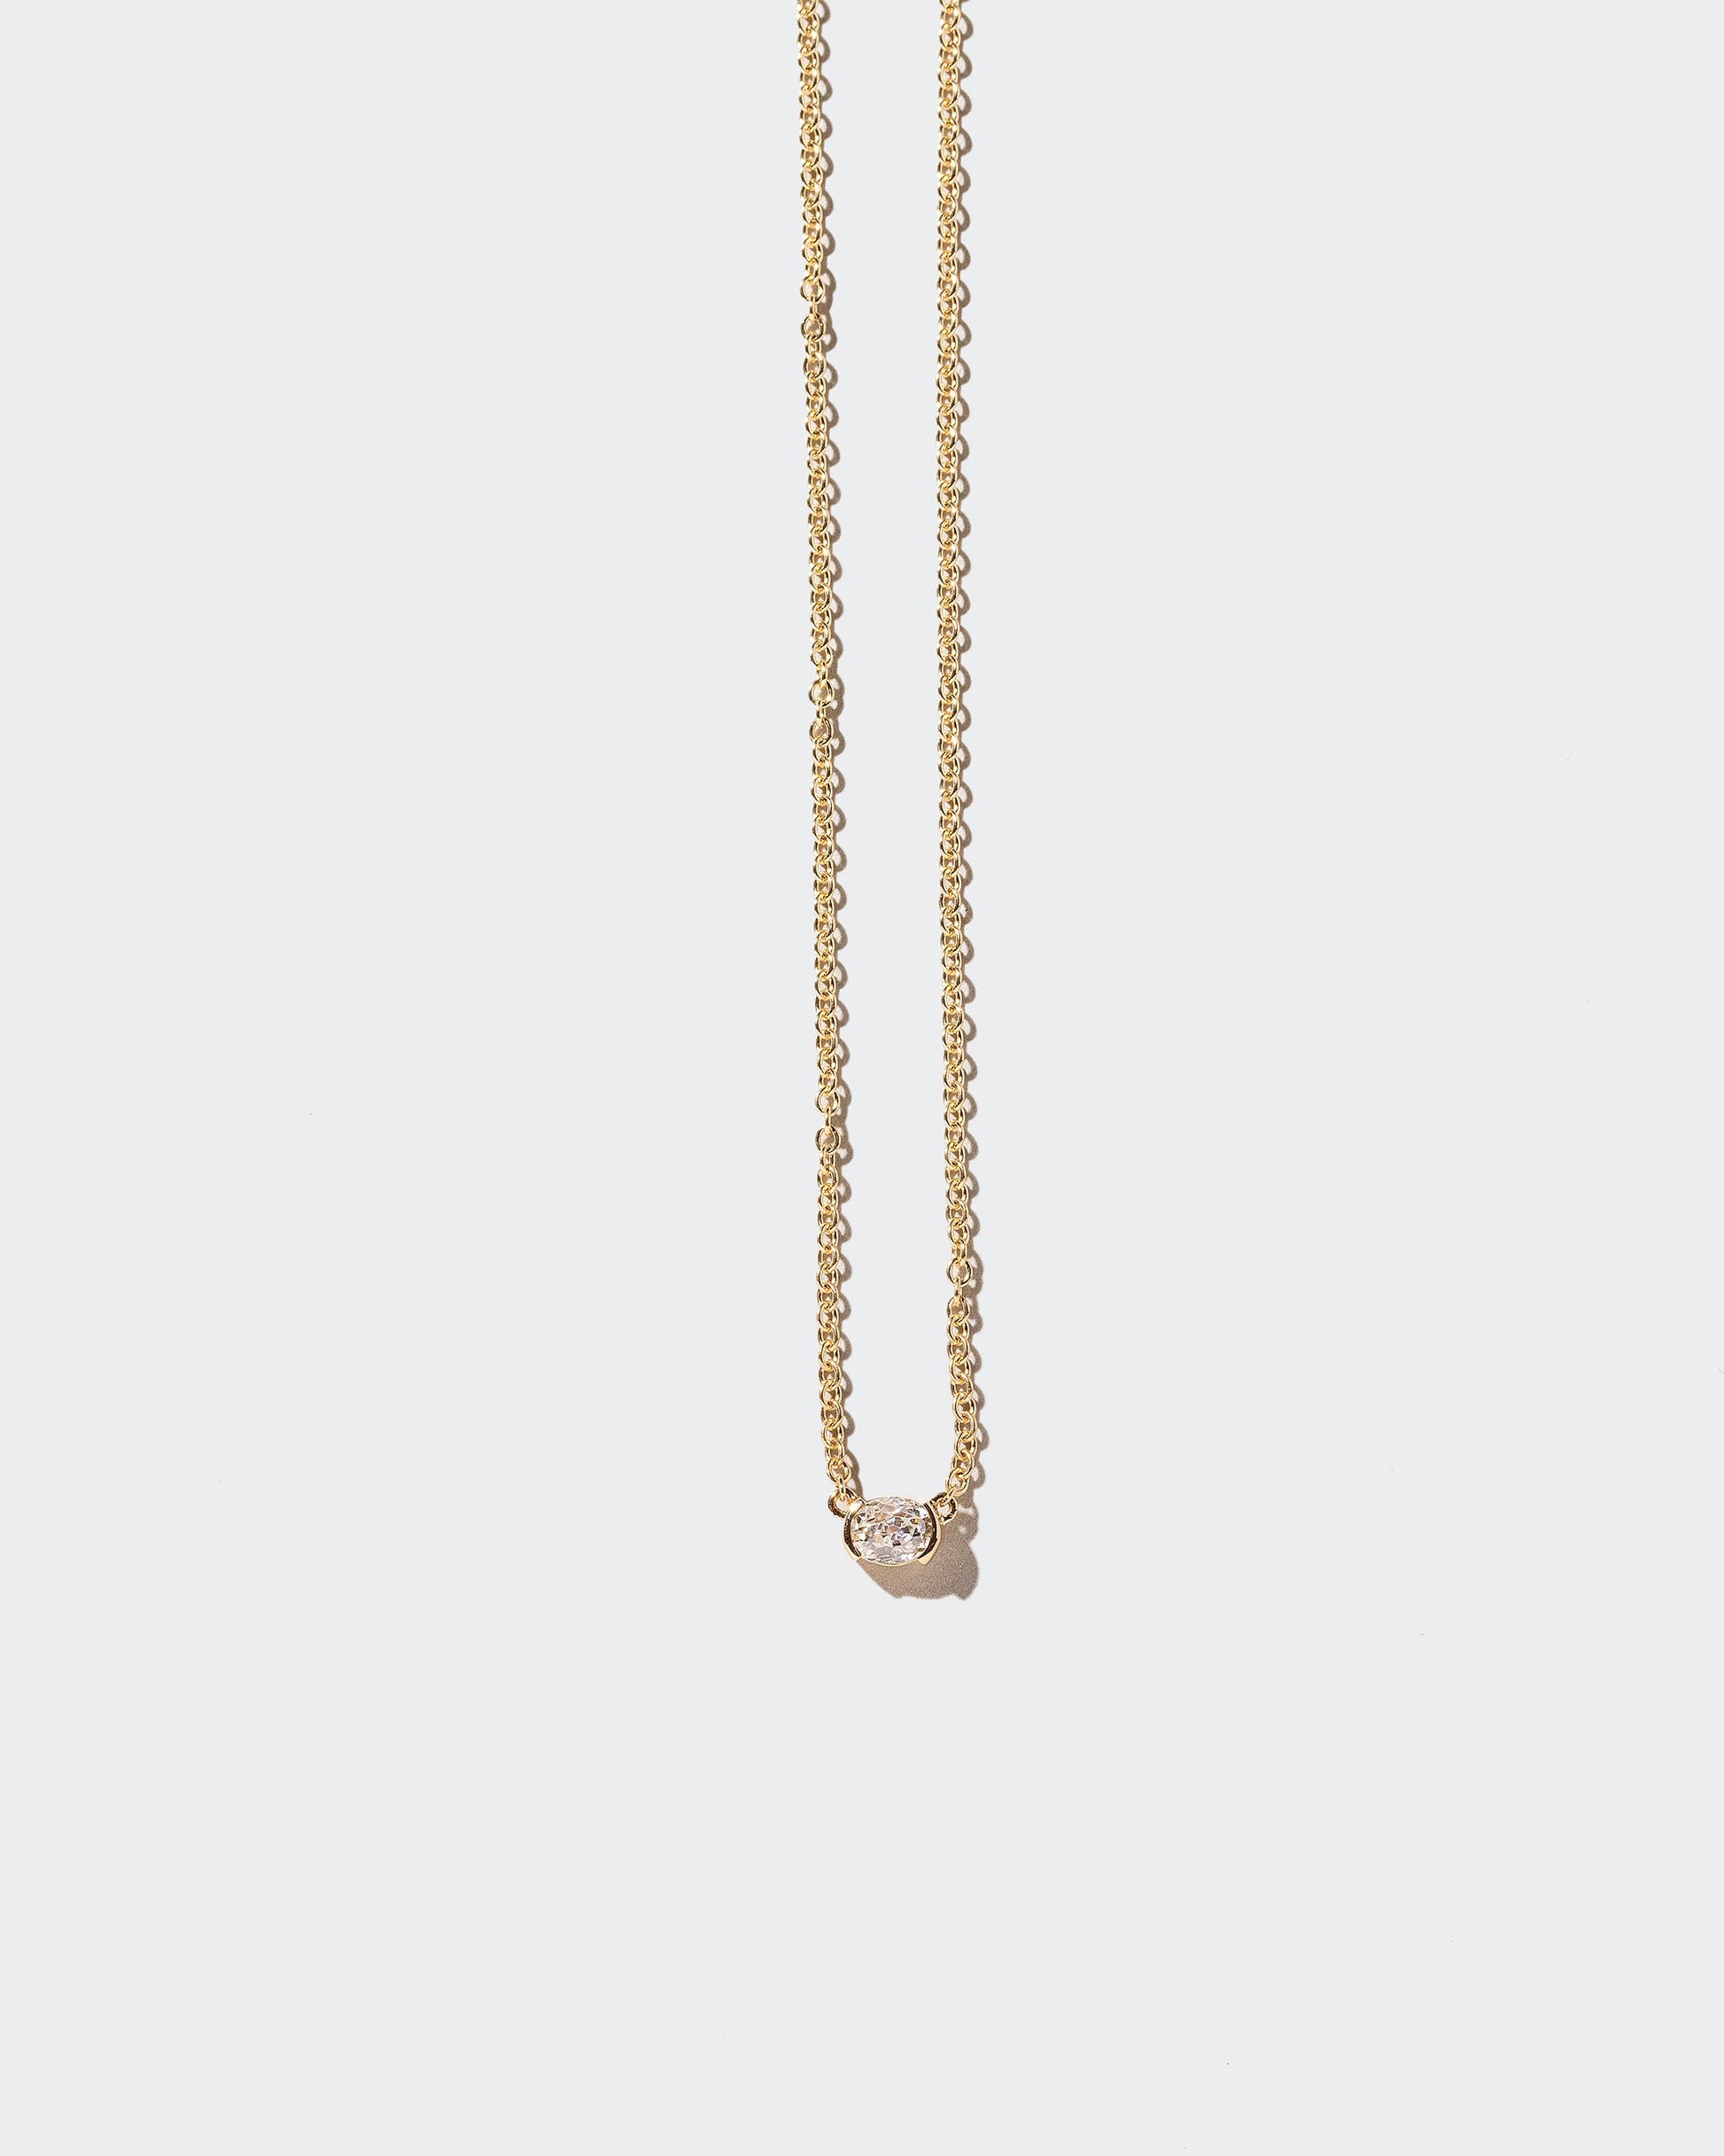  Keel Necklace on light color background.